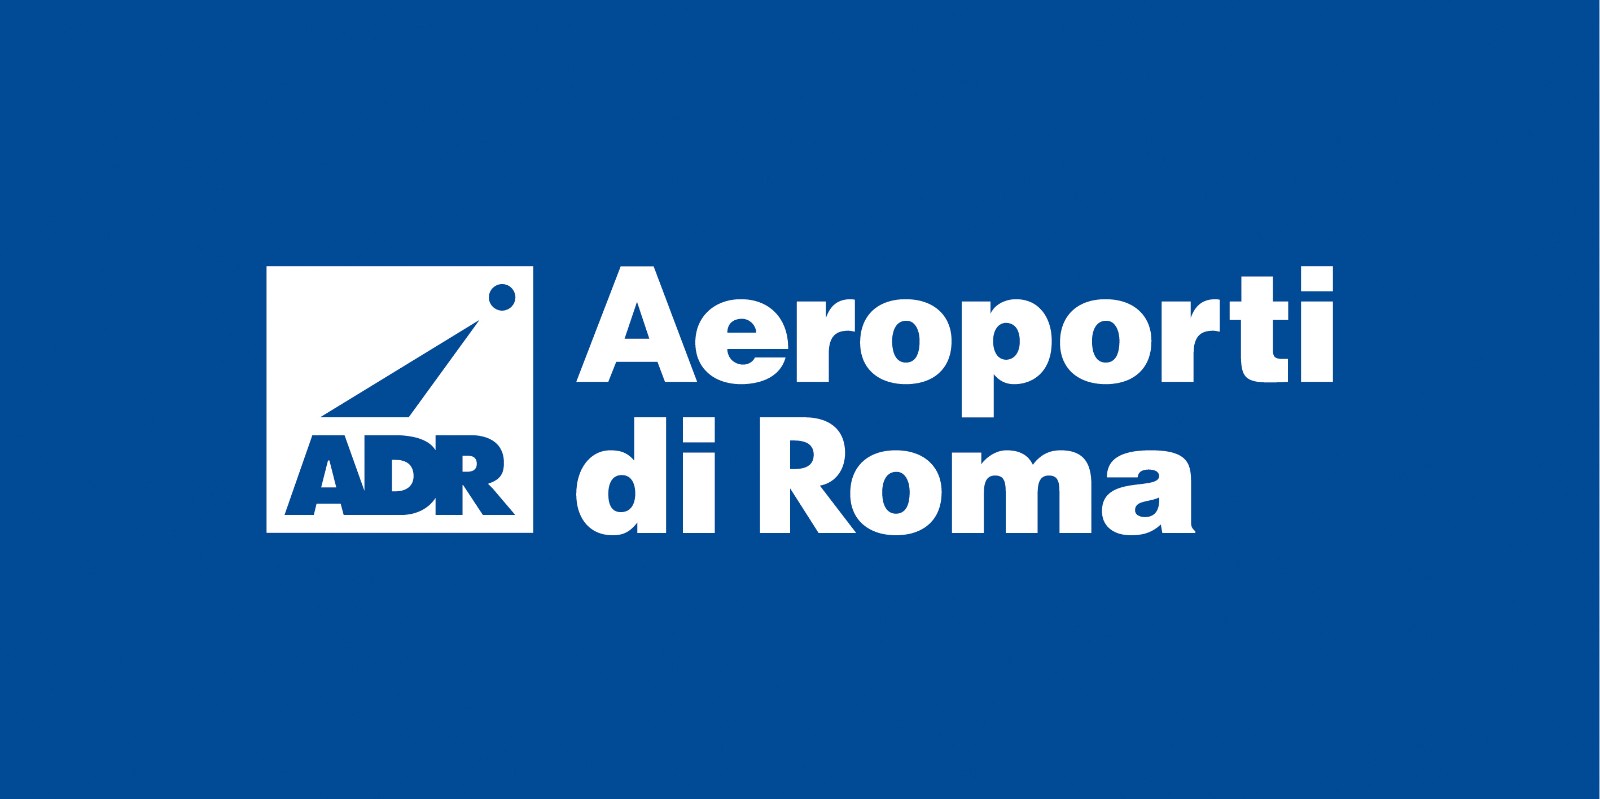 ADR - AEROPORTI DI ROMA